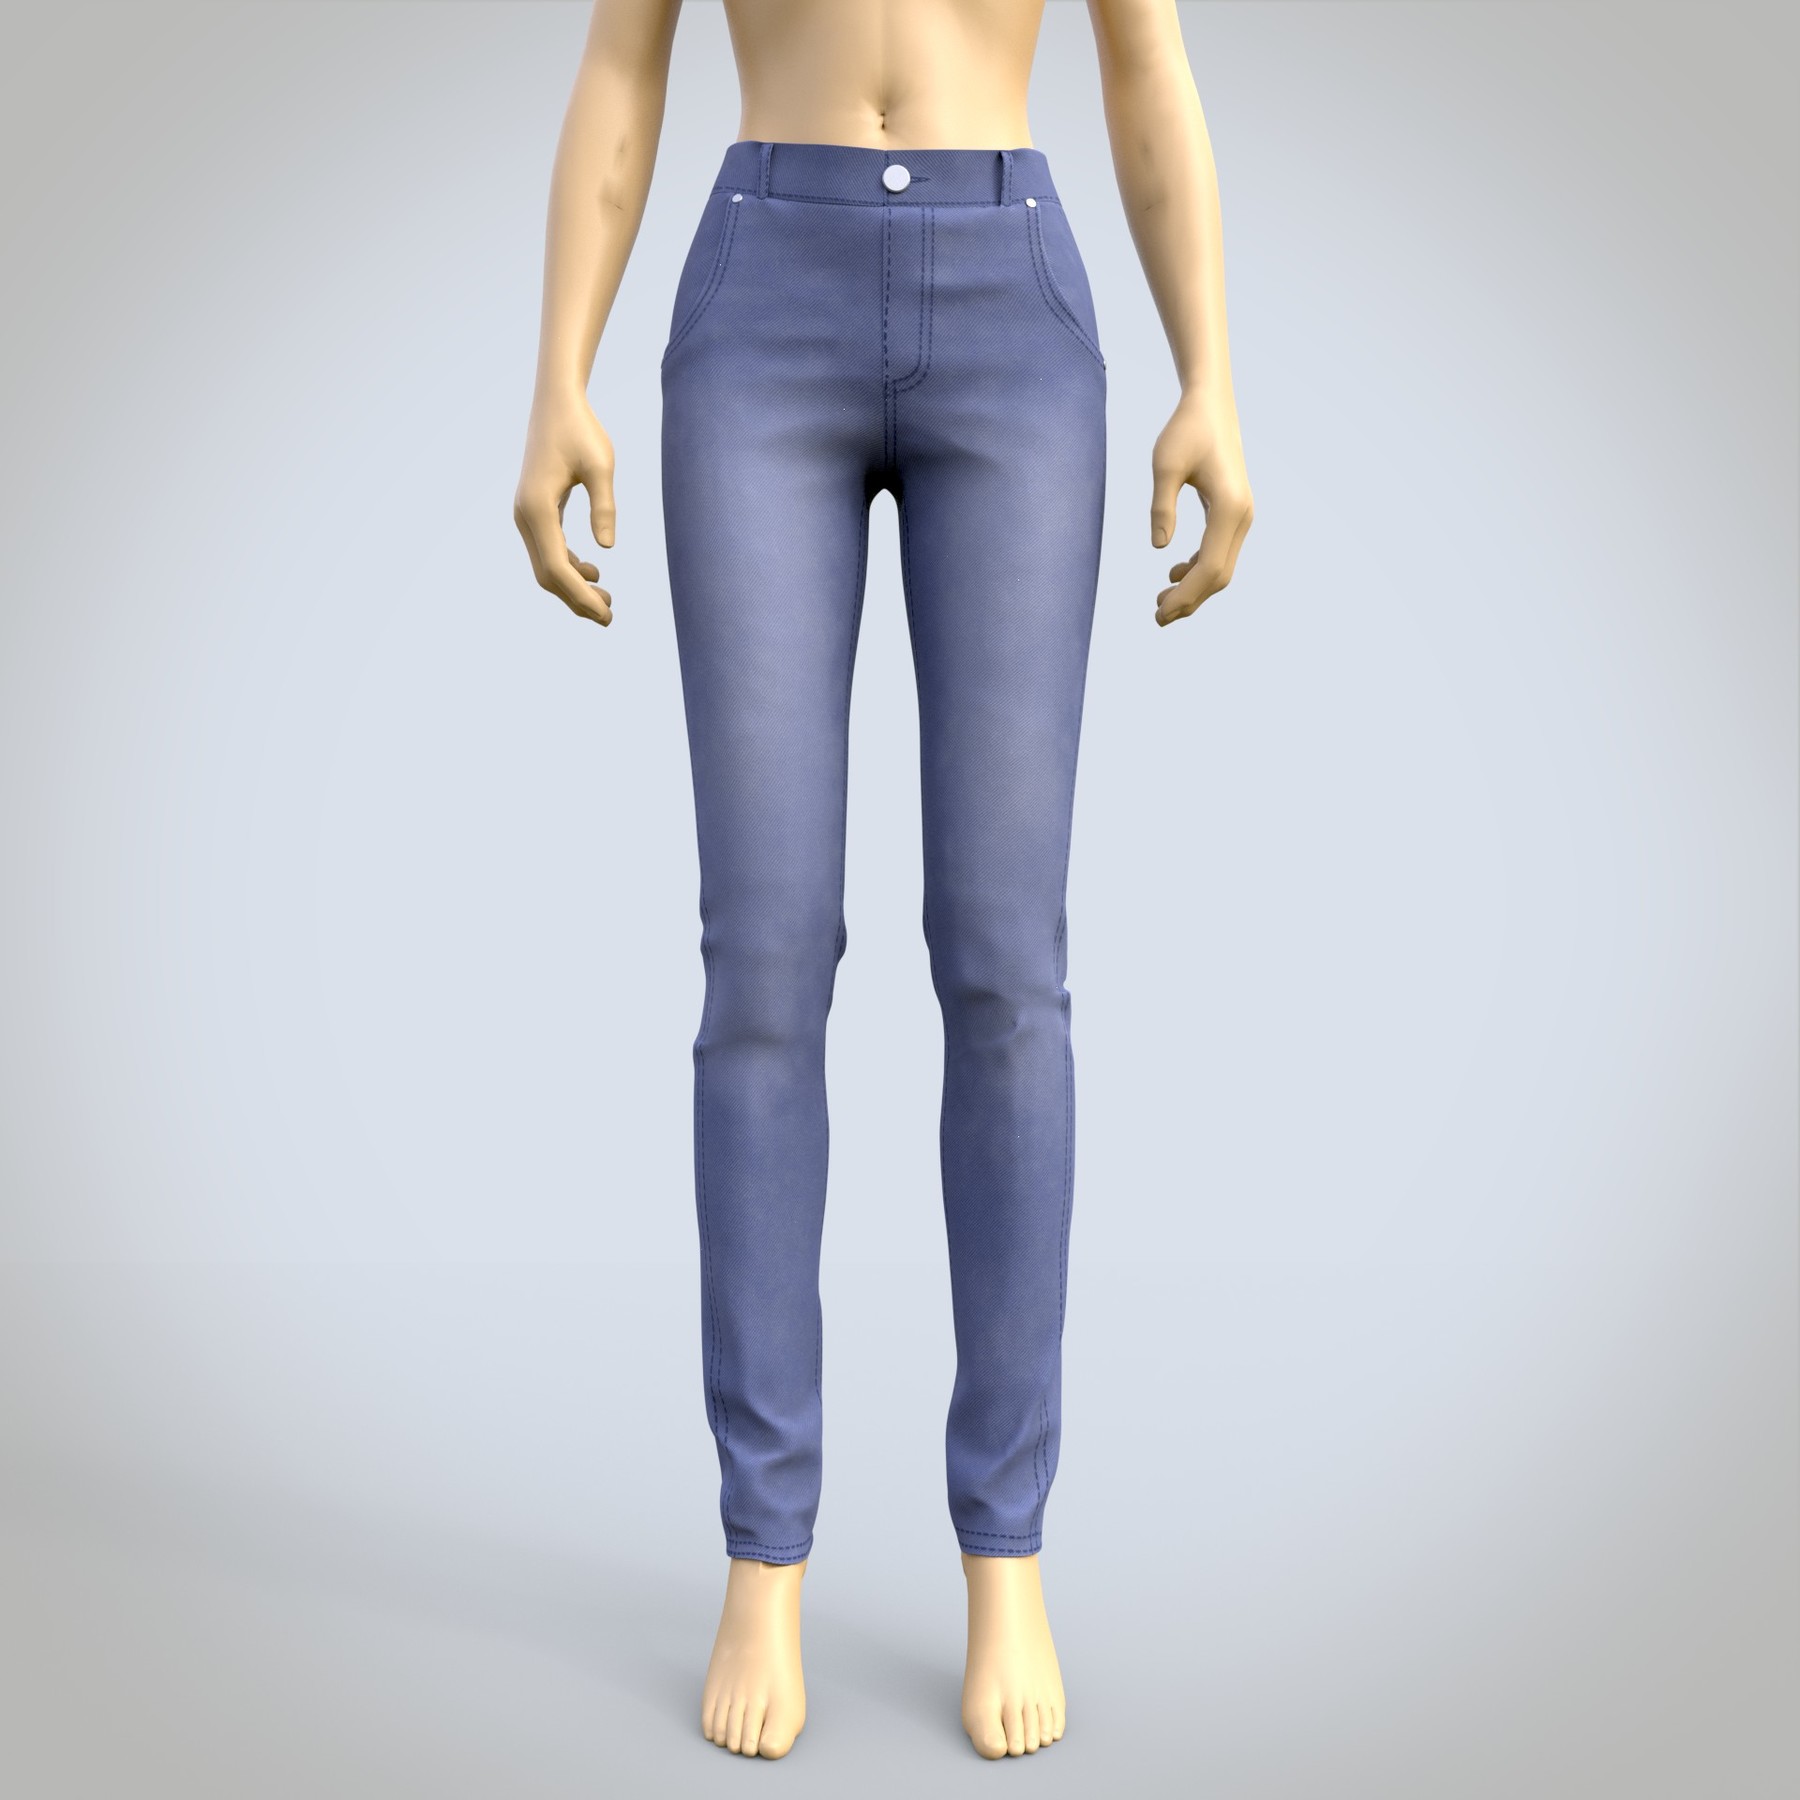 ArtStation - 3D female jeans denim pants | Resources